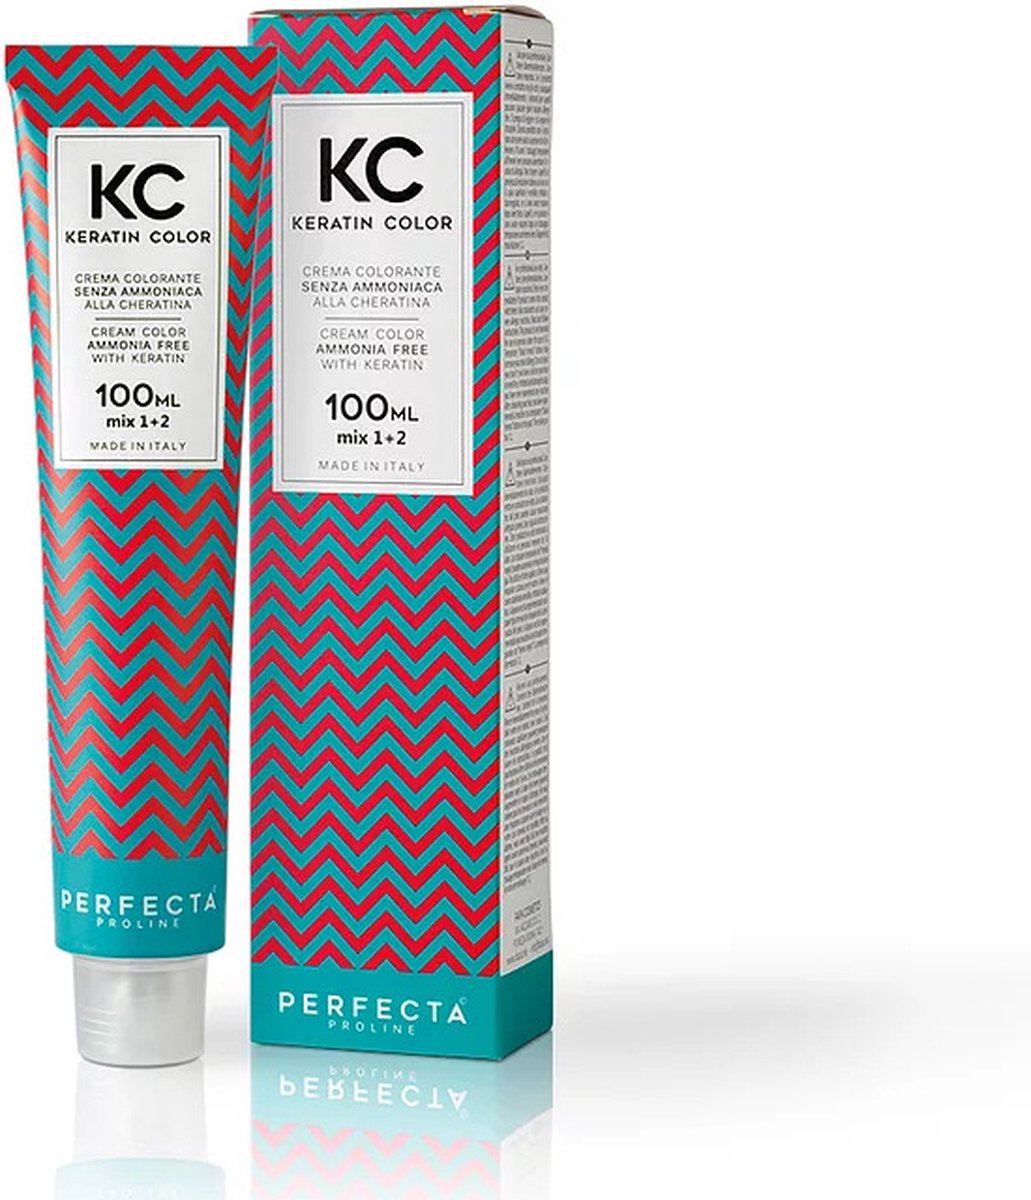 Faipa professional Kc keratin cream color 100 ml 4.66